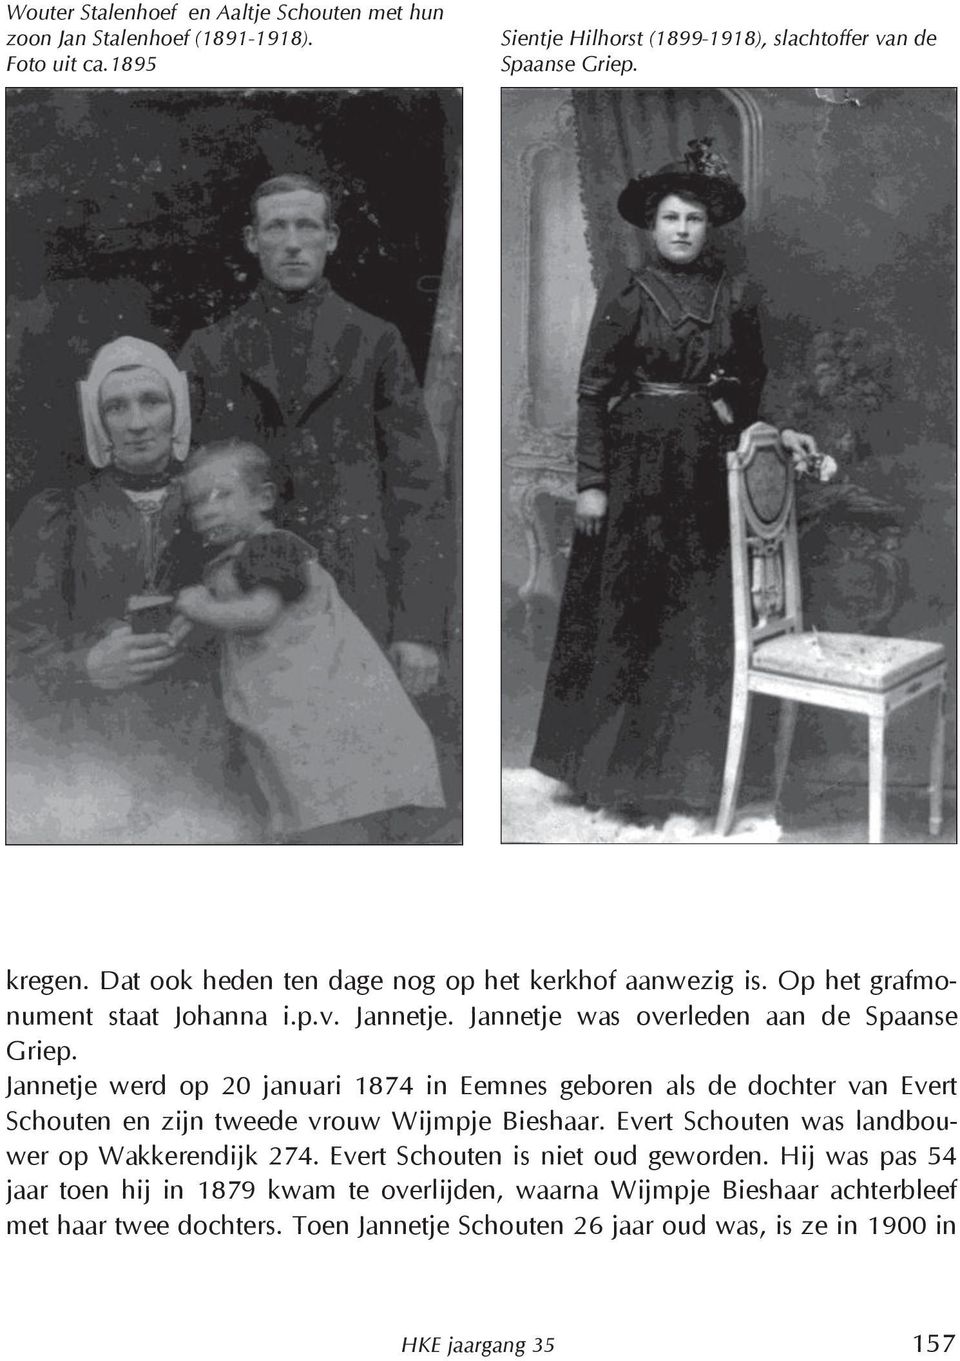 Jannetje werd op 20 januari 1874 in Eemnes geboren als de dochter van Evert Schouten en zijn tweede vrouw Wijmpje Bieshaar. Evert Schouten was landbouwer op Wakkerendijk 274.